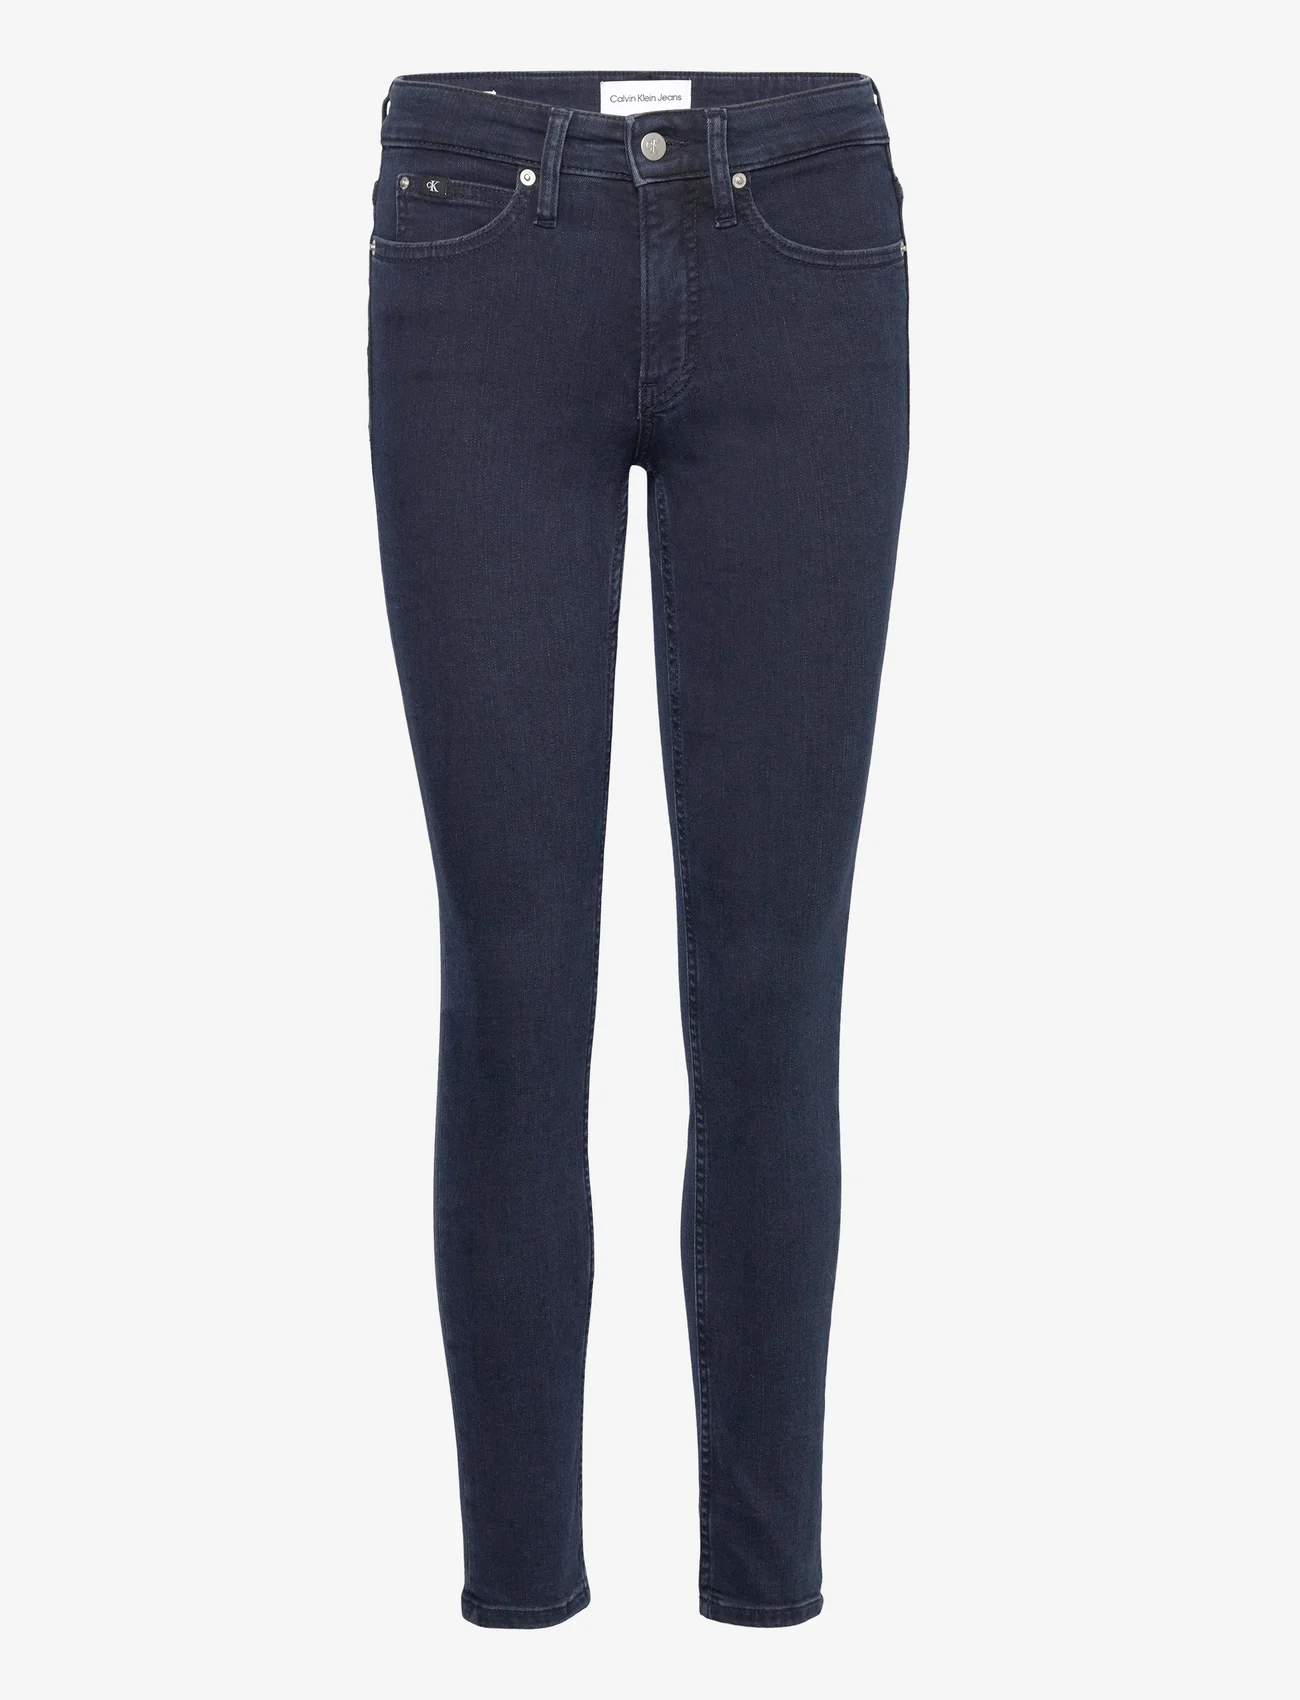 Calvin Klein Jeans - MID RISE SKINNY - pillifarkut - denim dark - 0